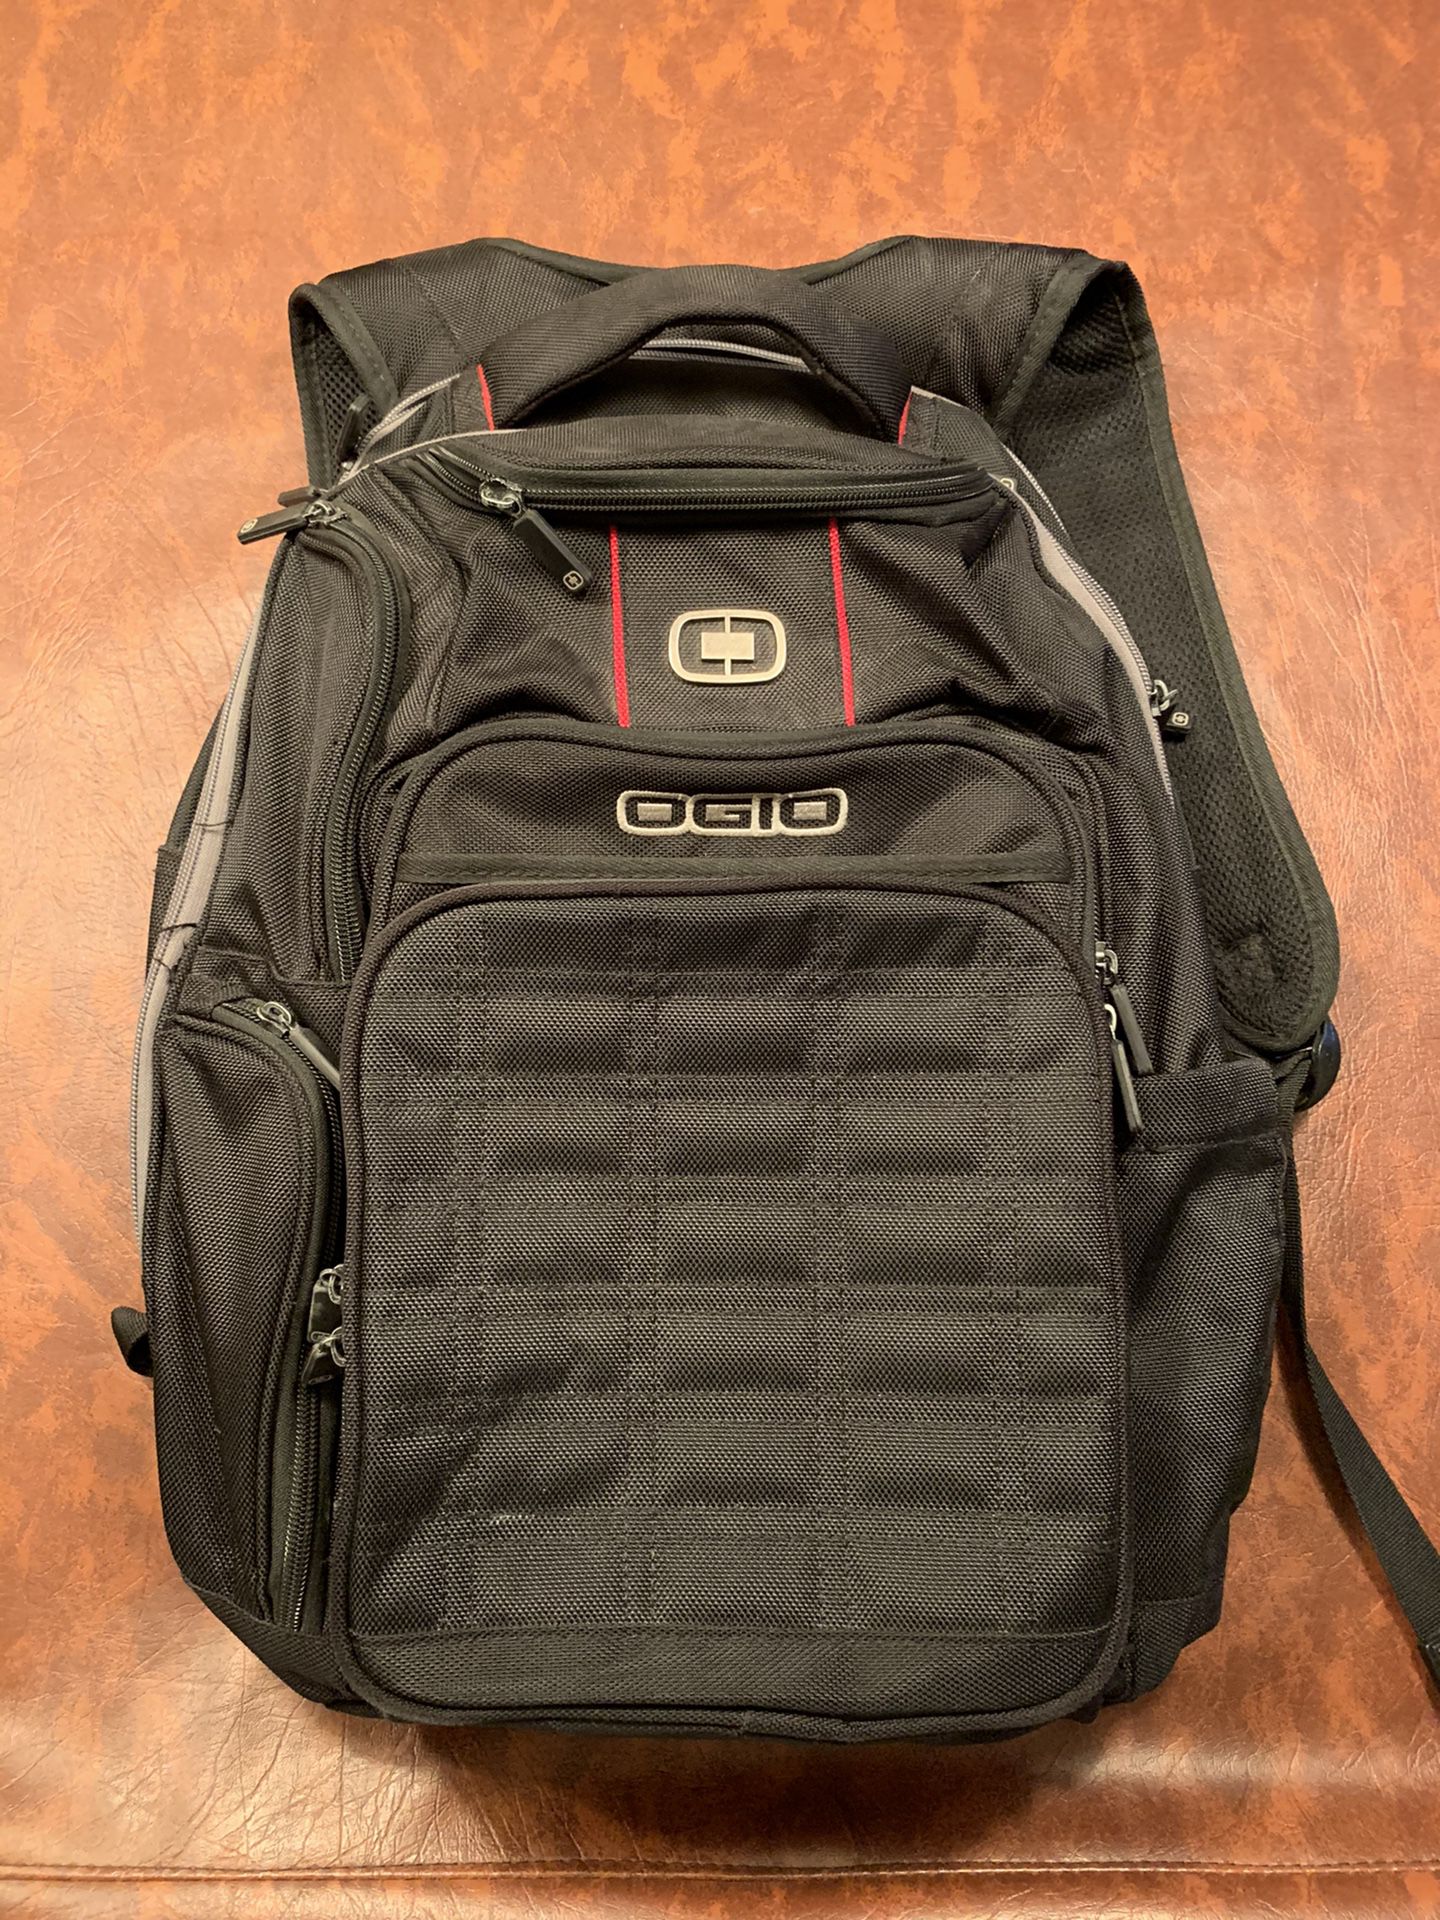 Ogio black backpack